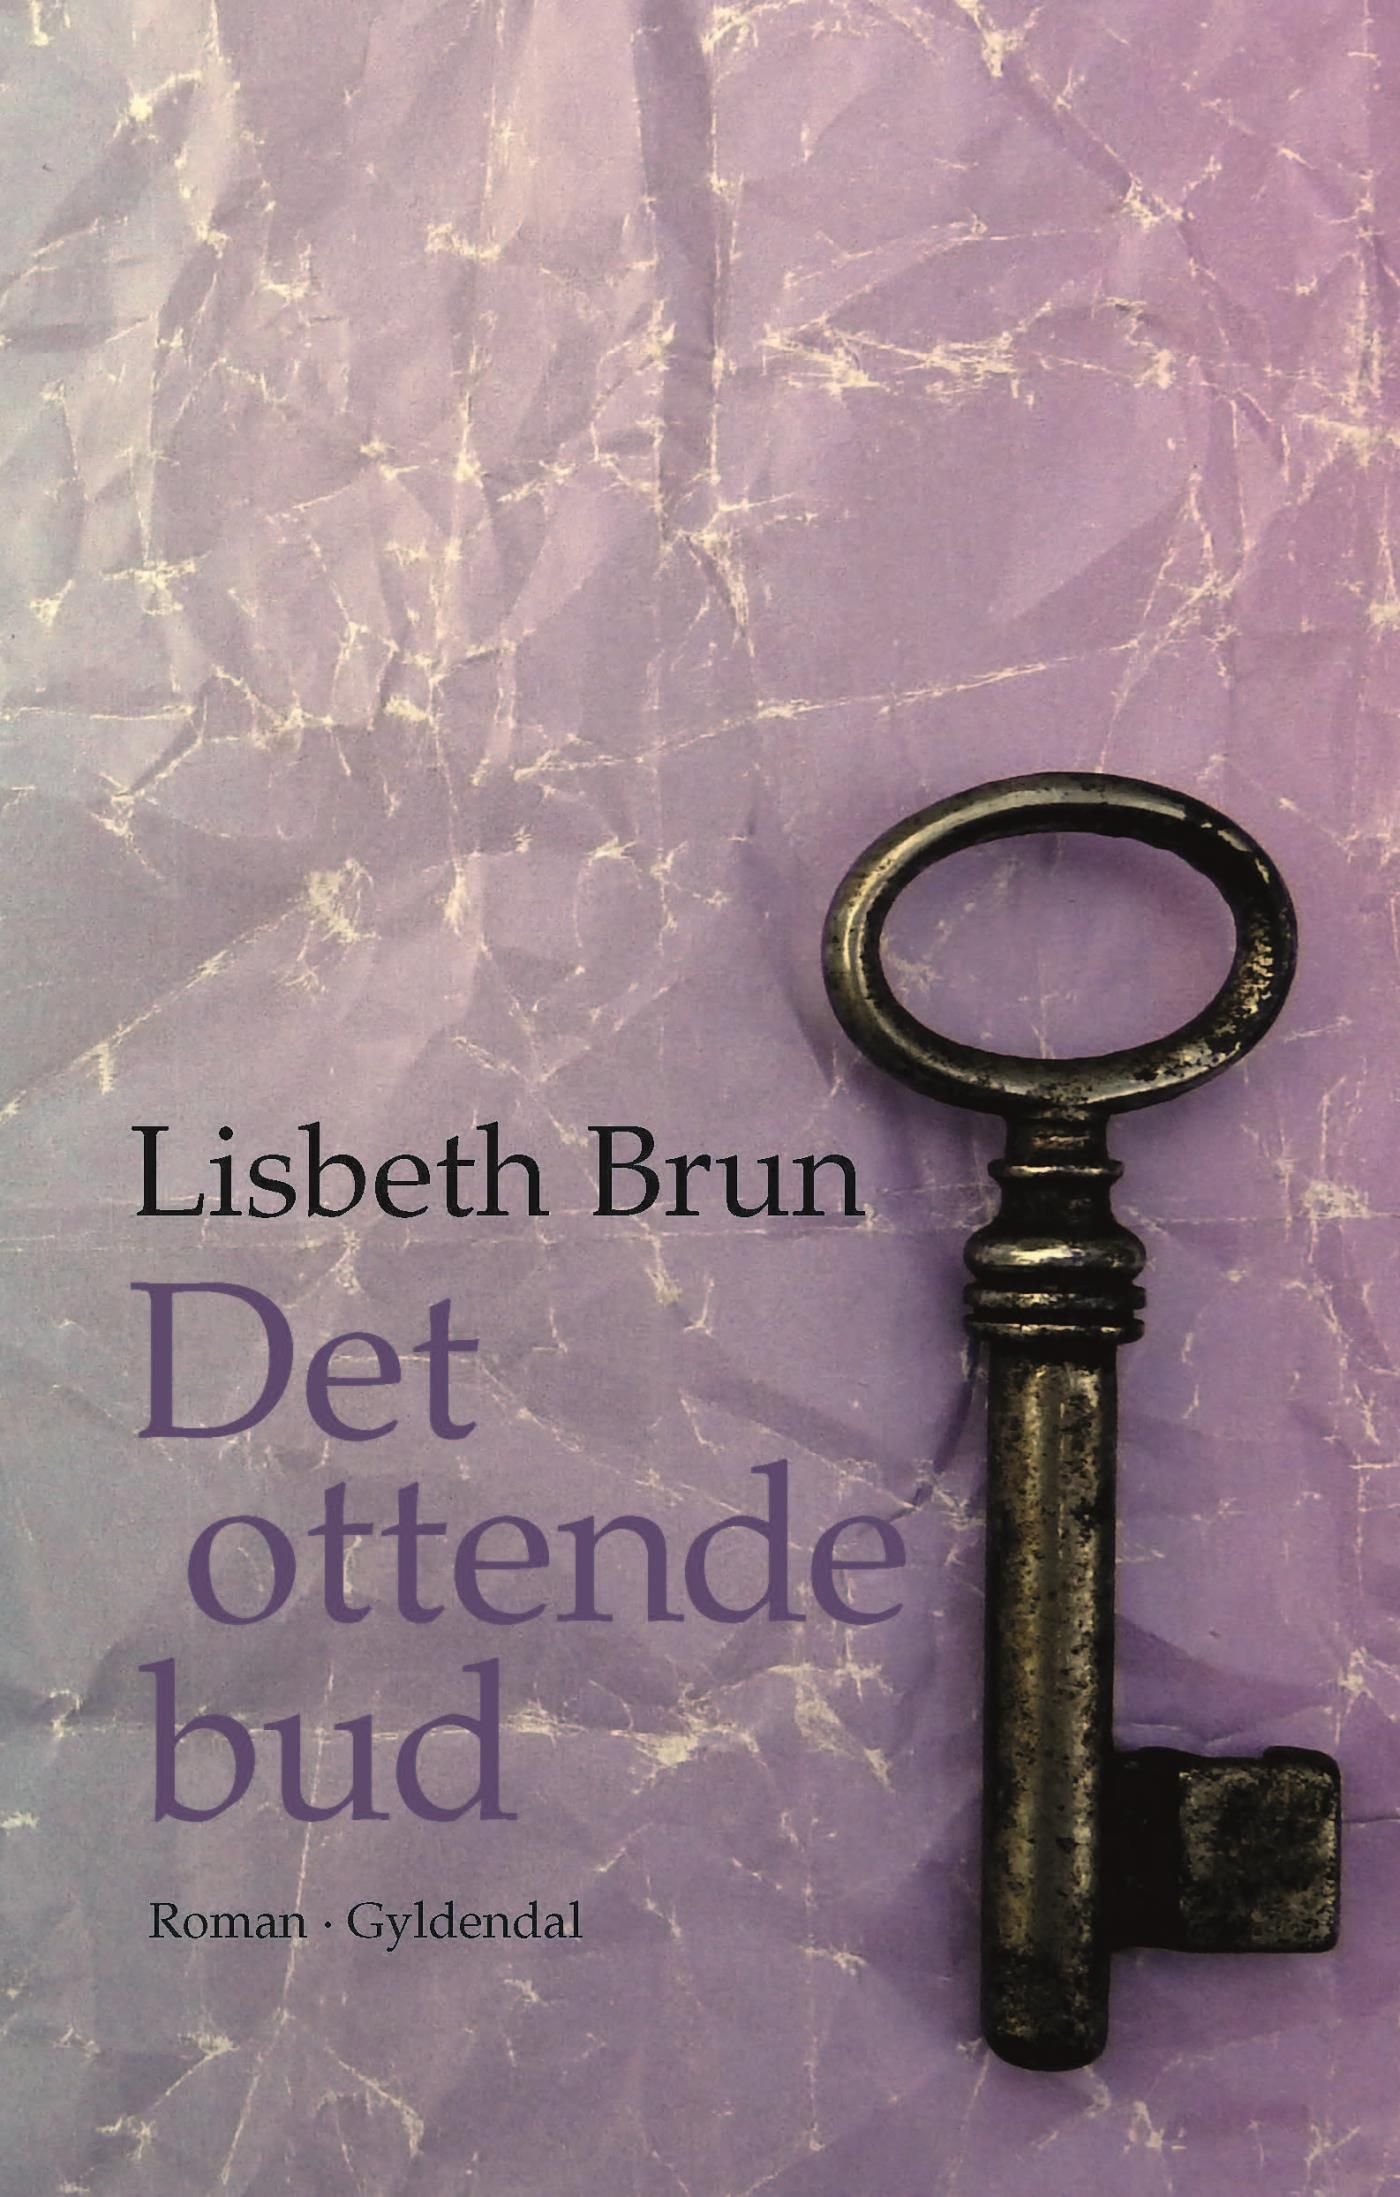 Det ottende bud, e-bog af Lisbeth Brun